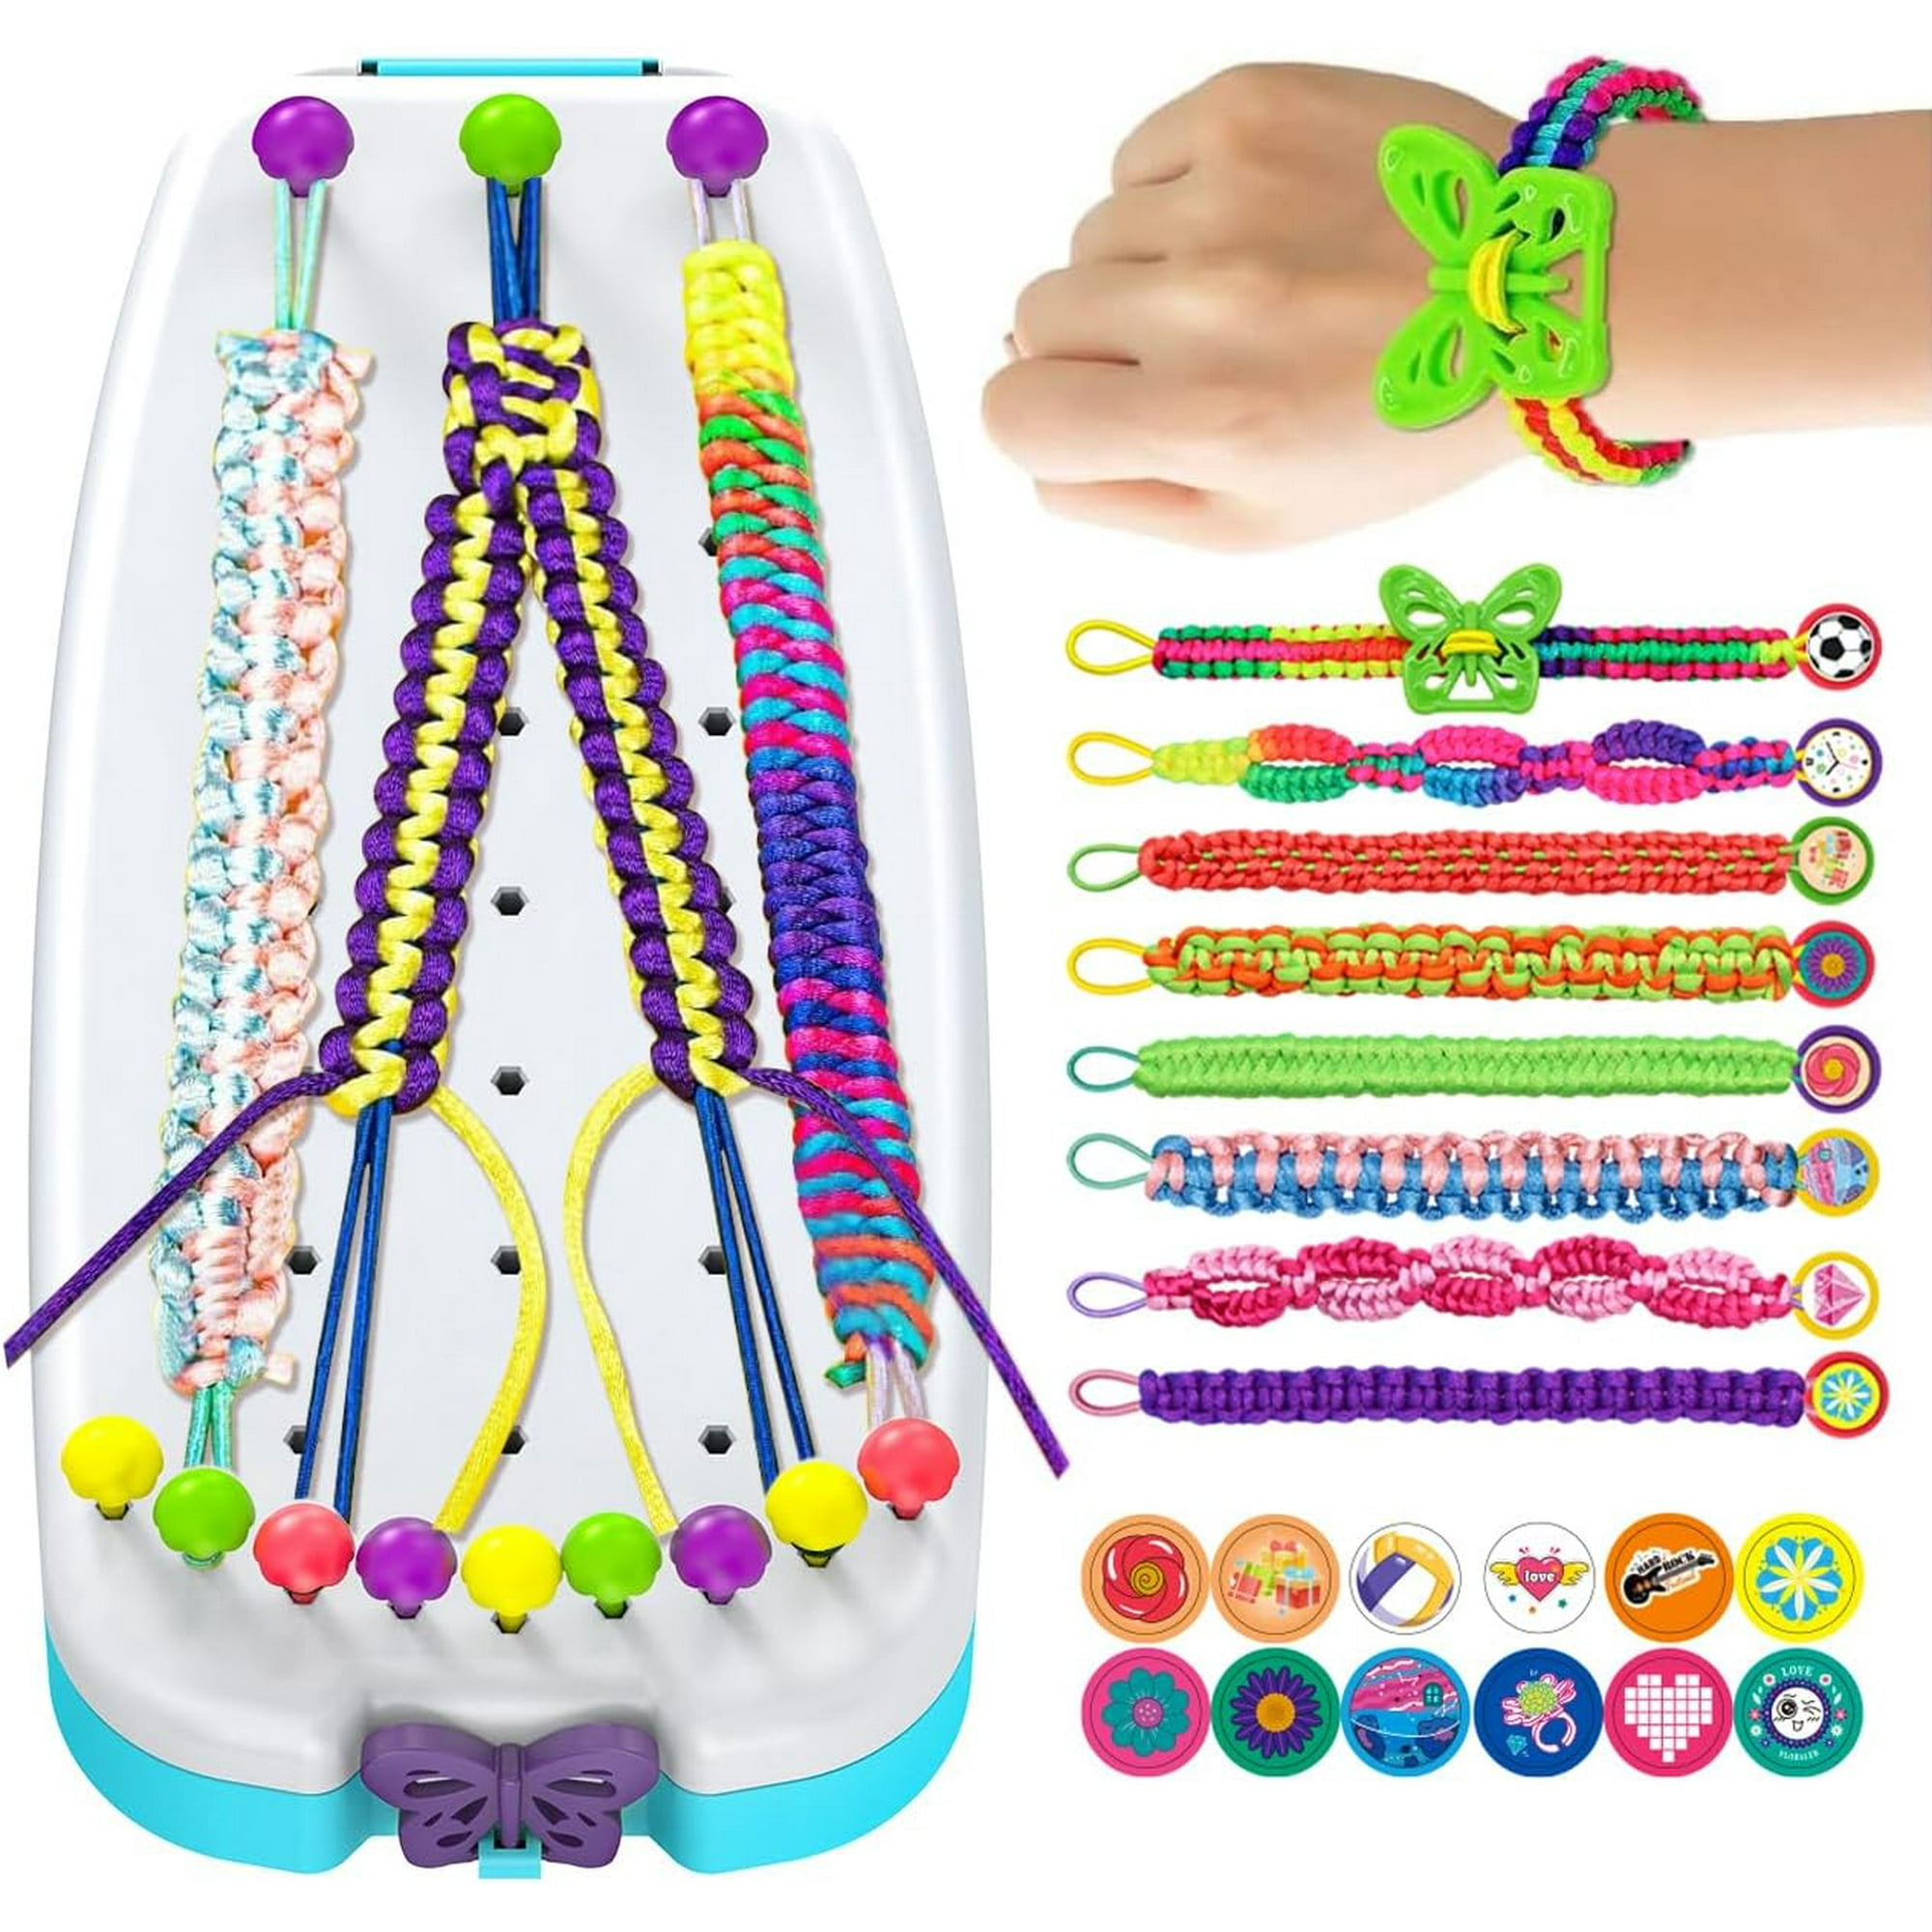 klmars Kit de fabricación de joyas – Suministros de manualidades para  pulseras, cuentas y dijes para regalos y juguetes para niñas de 4 a 12 años